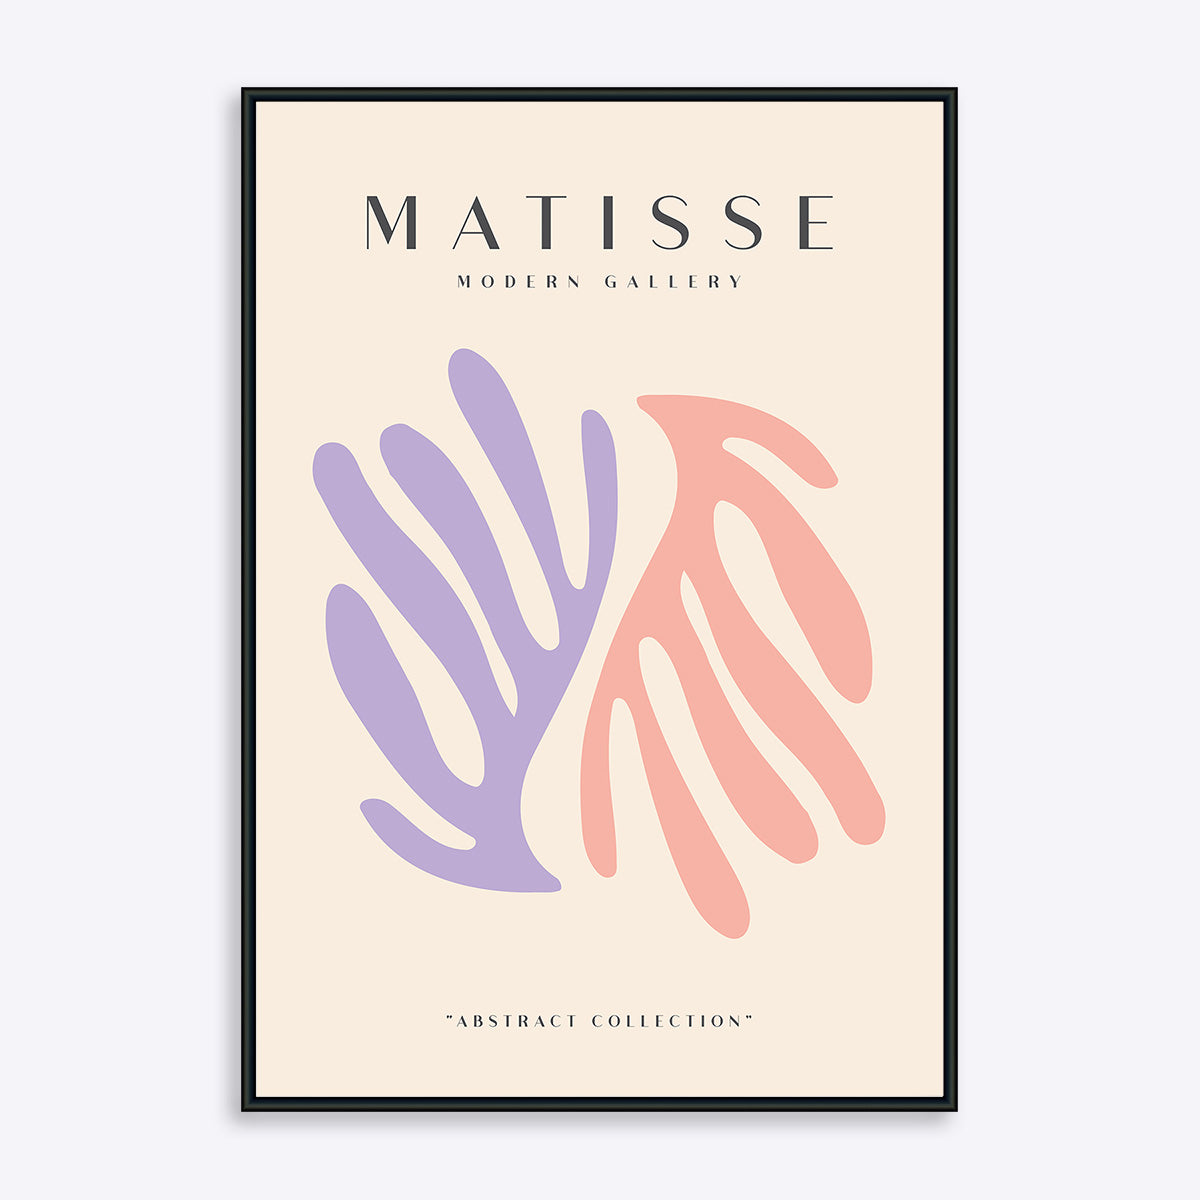 Matisse plakat med motiv i rosa og lilla